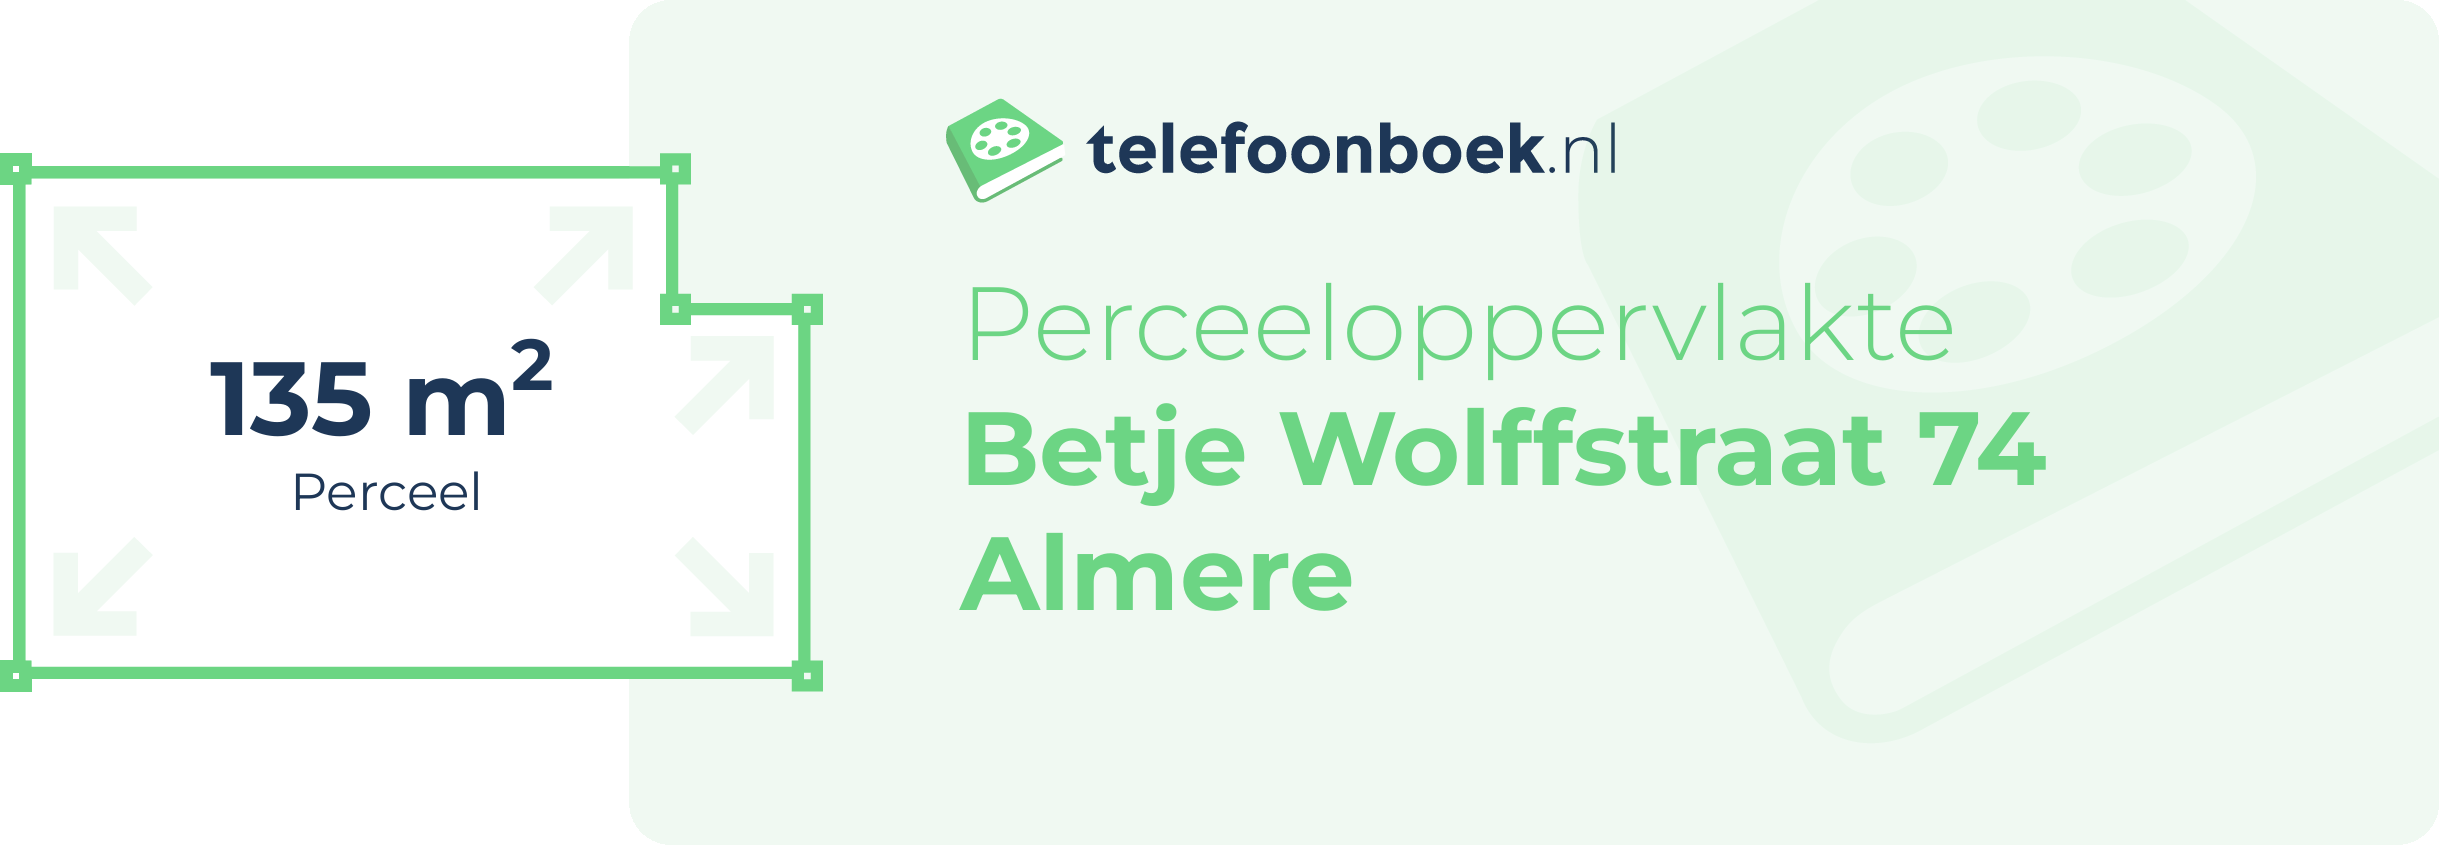 Perceeloppervlakte Betje Wolffstraat 74 Almere